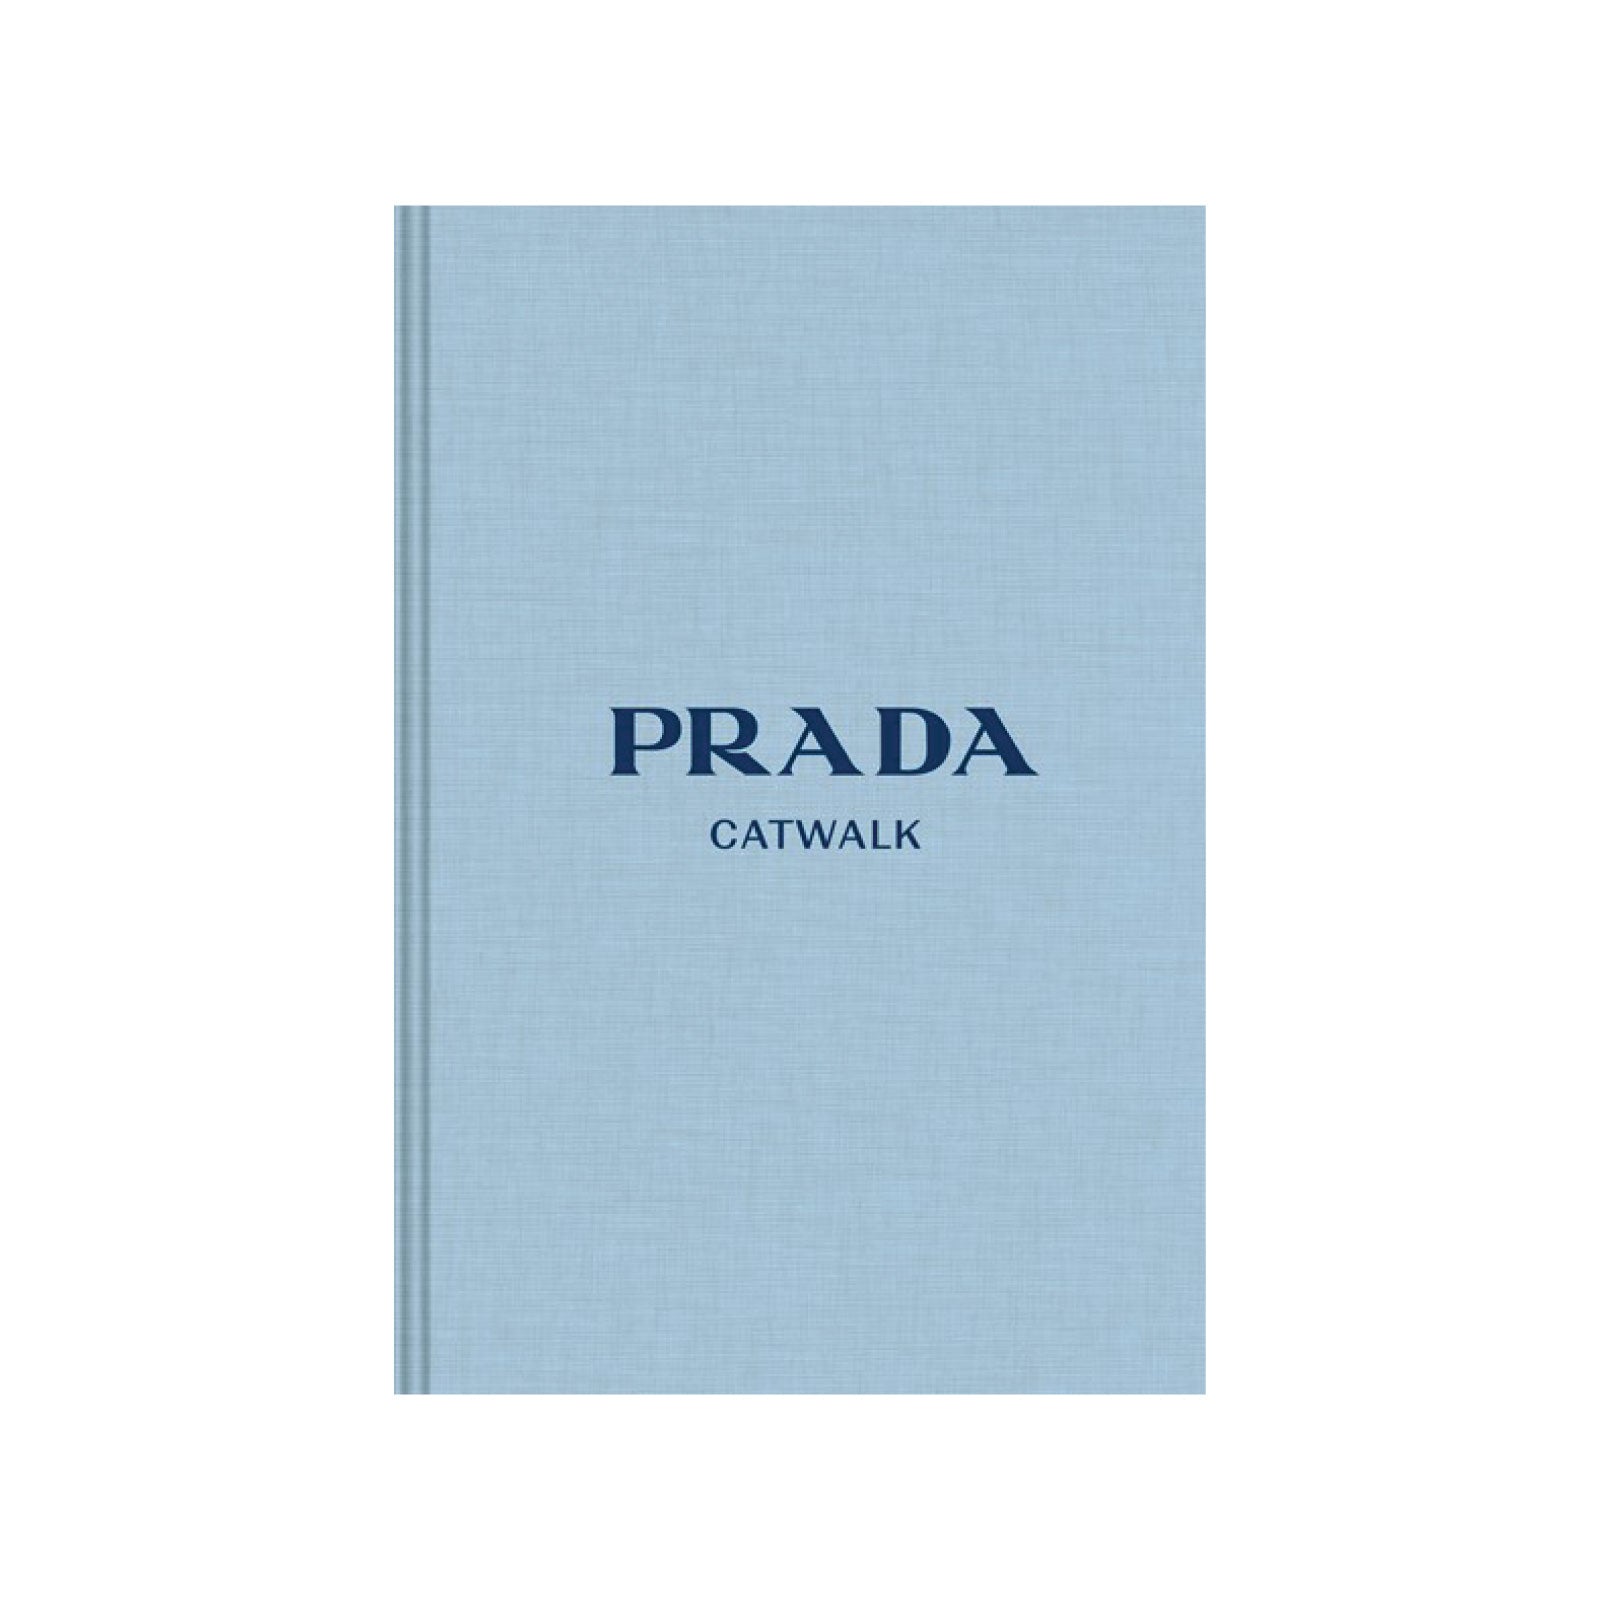 PRADA CATWALK BOOK - Light blue